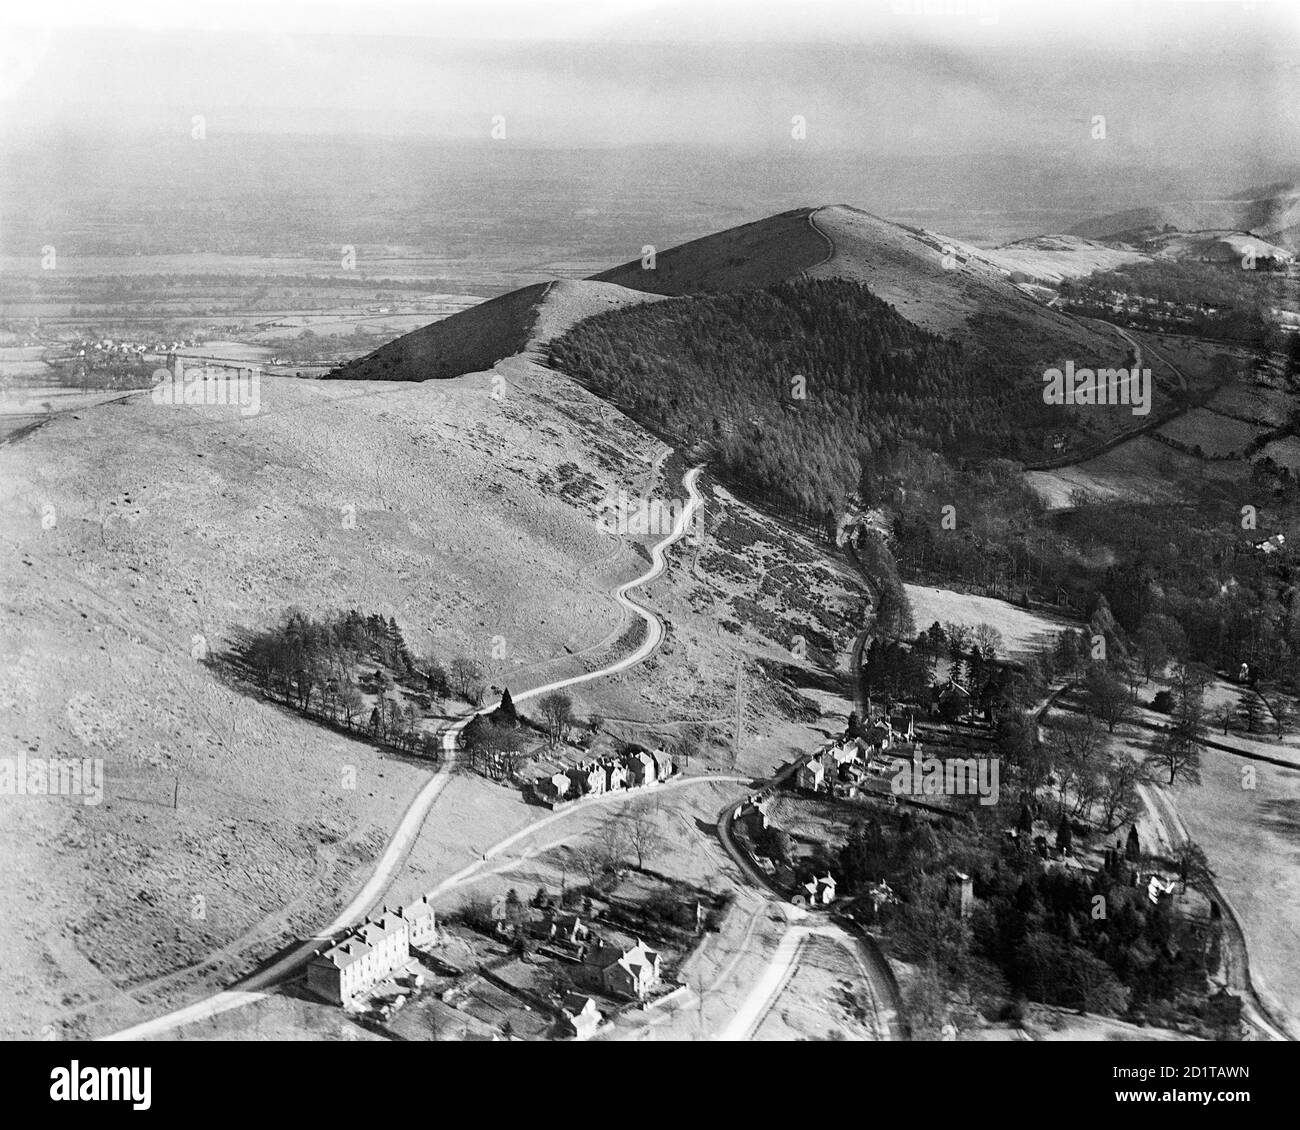 MALVERN HILLS, Herefordshire und Worcestershire. Luftaufnahme mit Blick nach Süden auf Upper Colwall. Jubillee Drive schlängelt sich durch eine Plantage entlang der Westseite des Grats. Fotografiert im Jahr 1921. Aerofilms Collection (siehe Links). Stockfoto